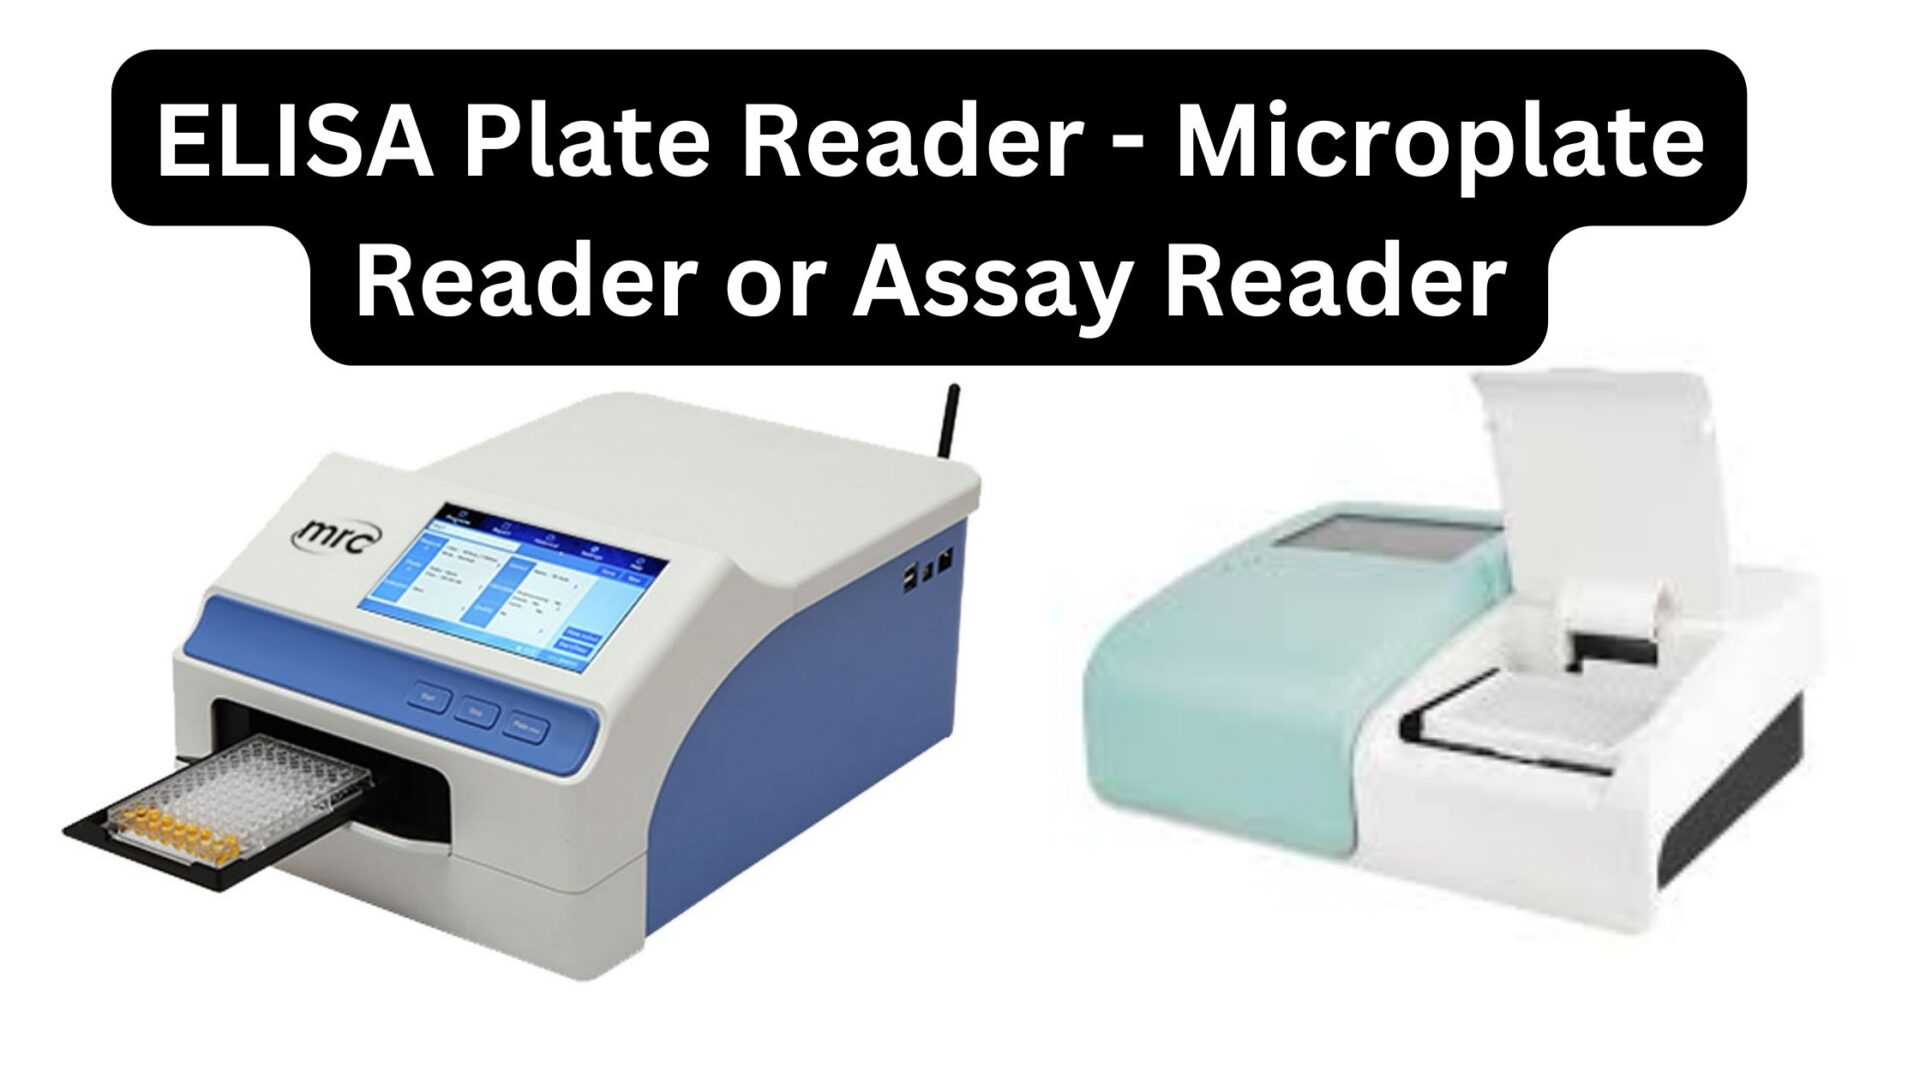 ELISA Plate Reader - Microplate Reader or Assay Reader